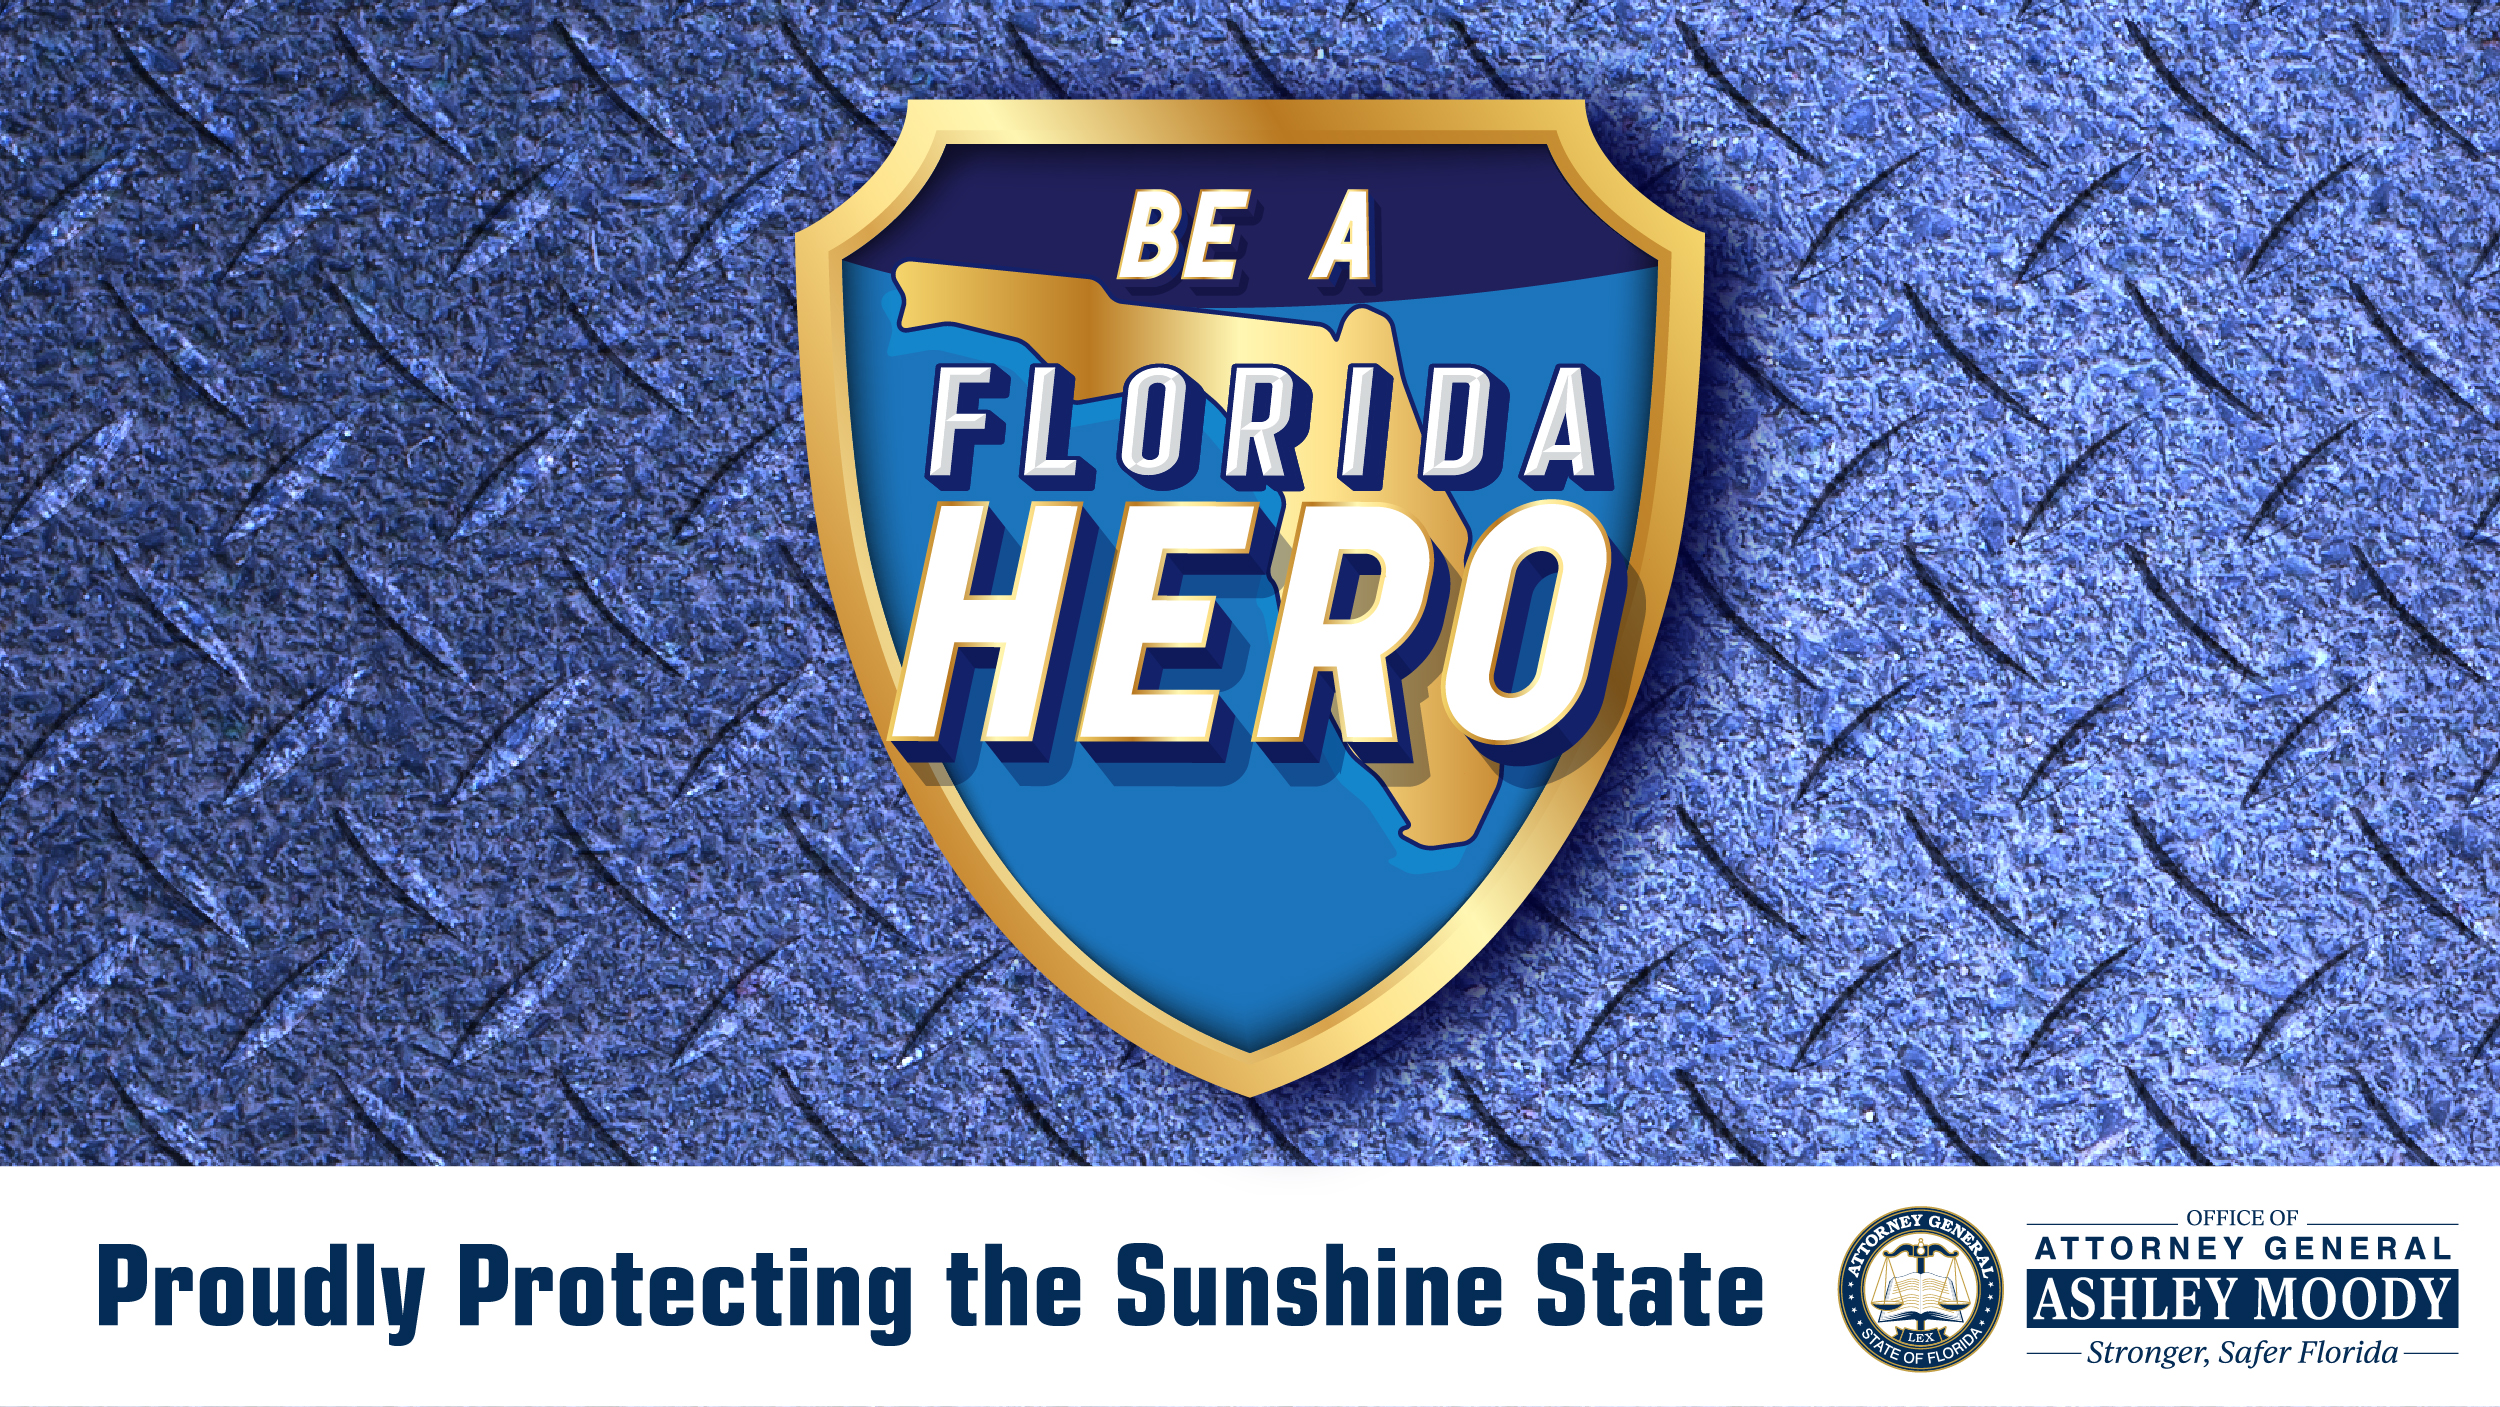 Be A Florida Hero initiative